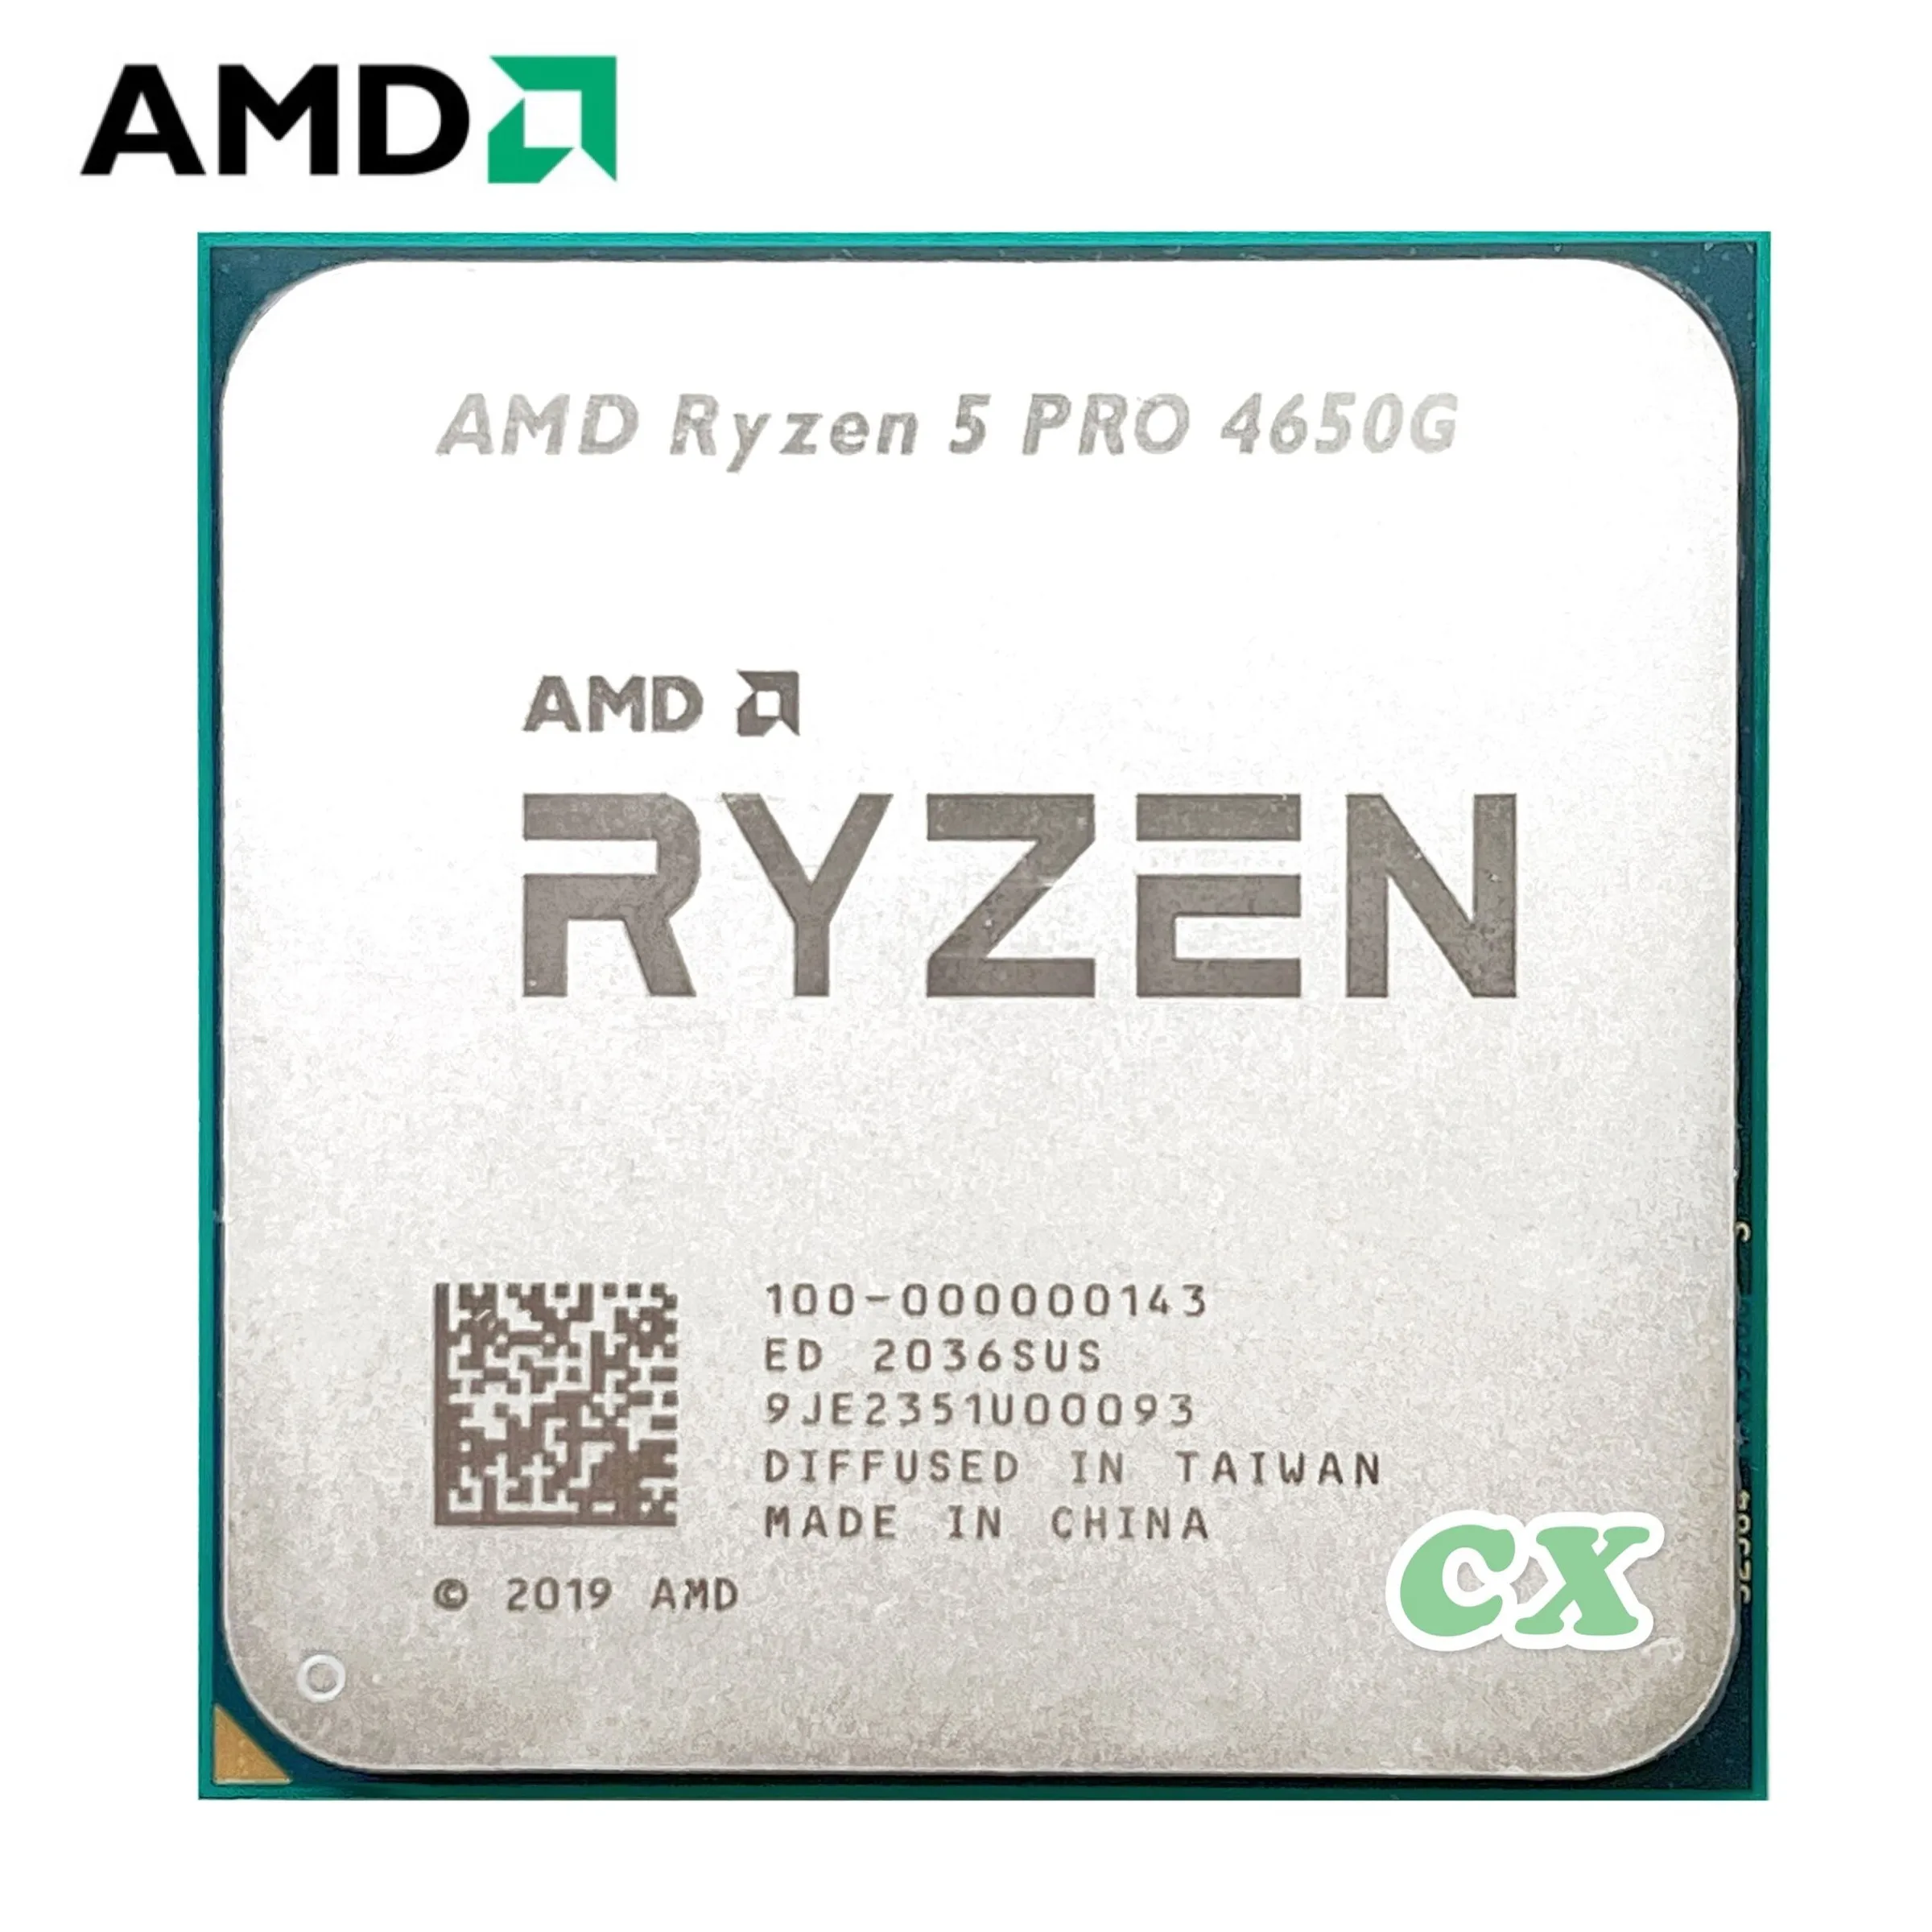 AMD Ryzen 3 3100. Ryzen 5 1600. Ryzen 5 1600x. Ryzen 5 1600x вид снизу. Ryzen 3 pro 4350g